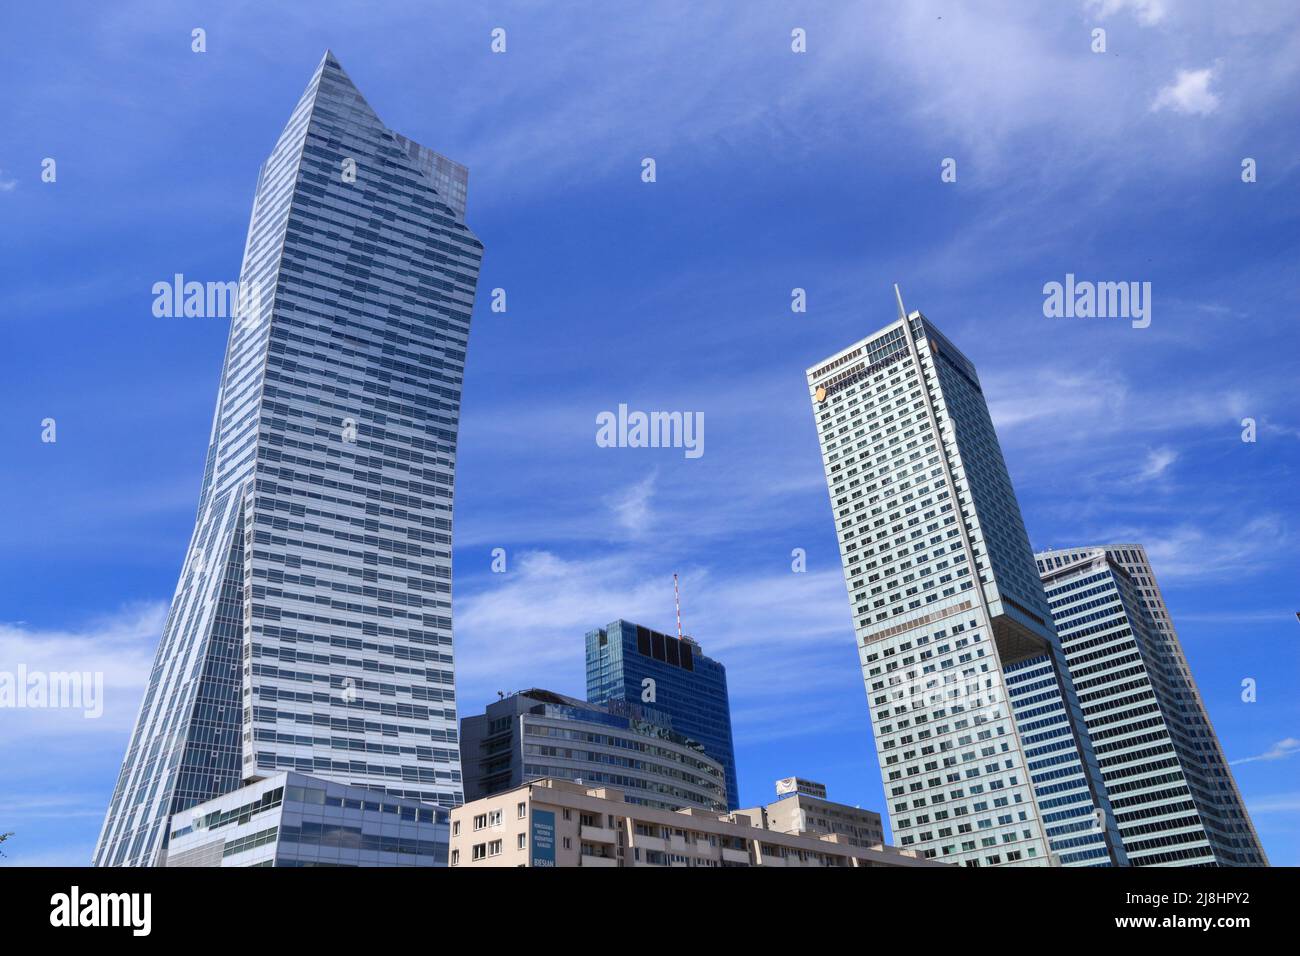 WARSCHAU, POLEN - 19. JUNI 2016: Skyline der Innenstadt von skycraper in Warschau, Polen. Das Gebäude auf der linken Seite ist Zlota 44, entworfen von Daniel Libeskind. Stockfoto